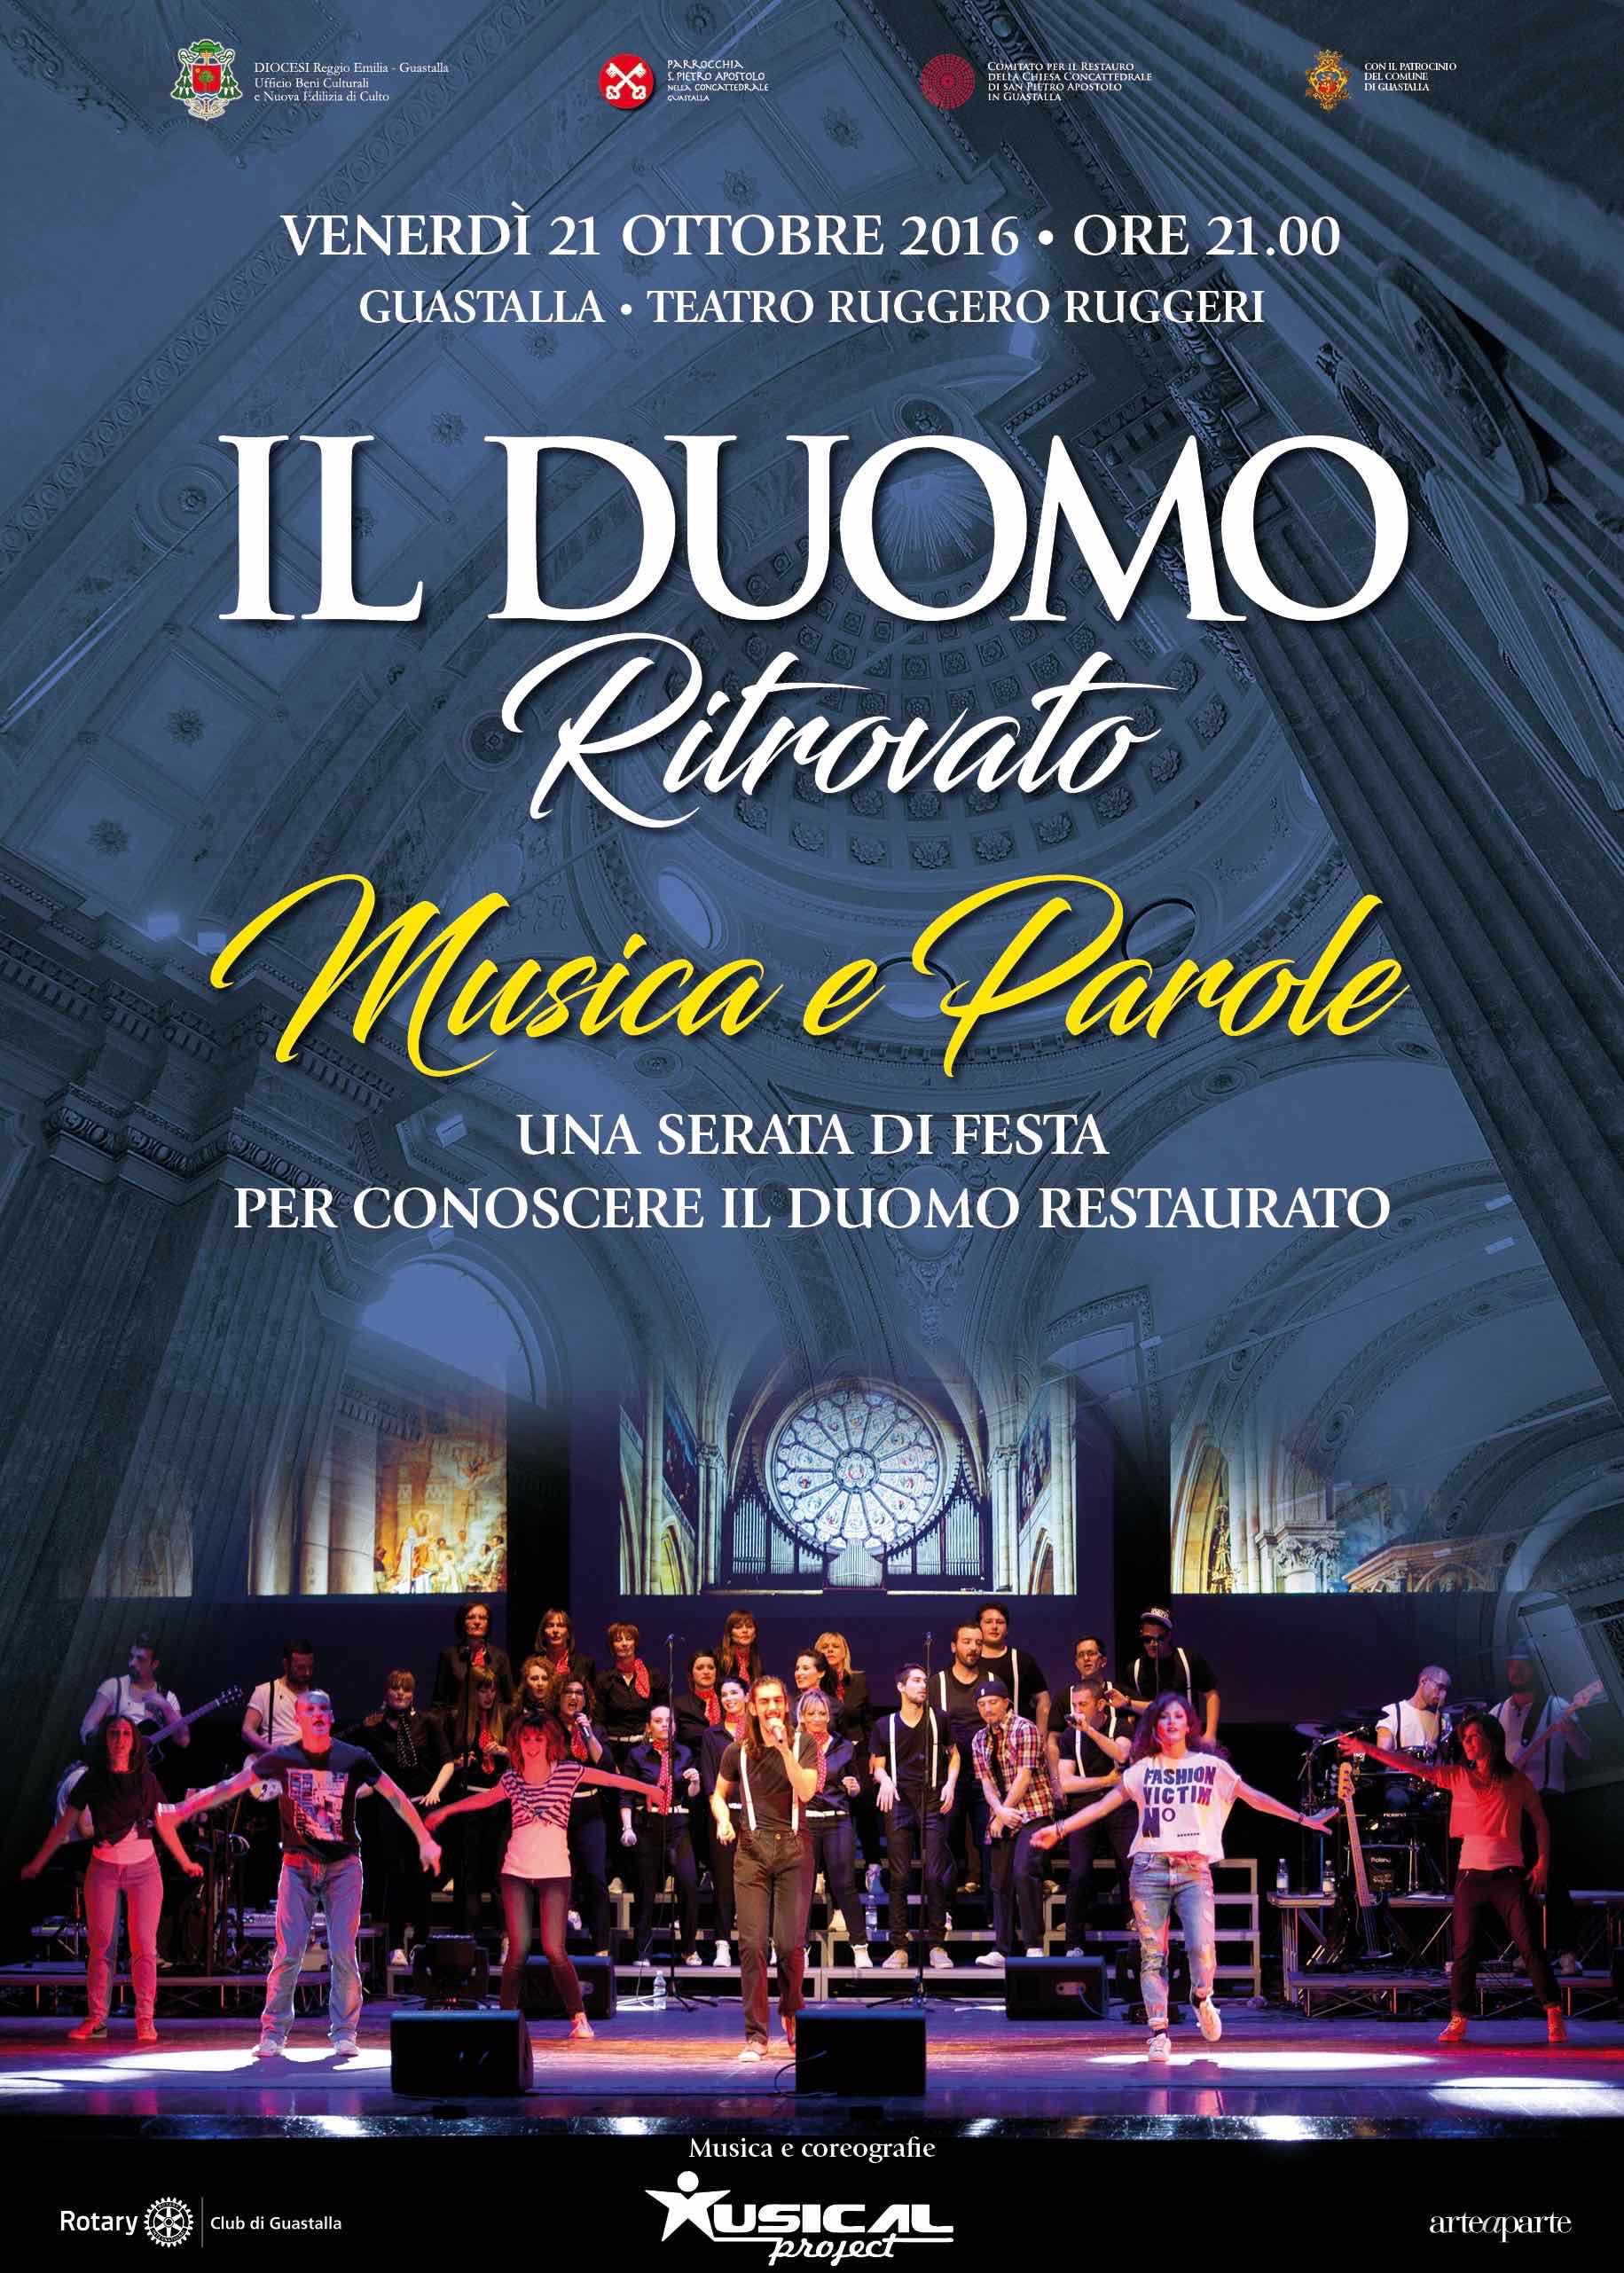 MUSICA E PAROLE Il Duomo ritrovato guastalla